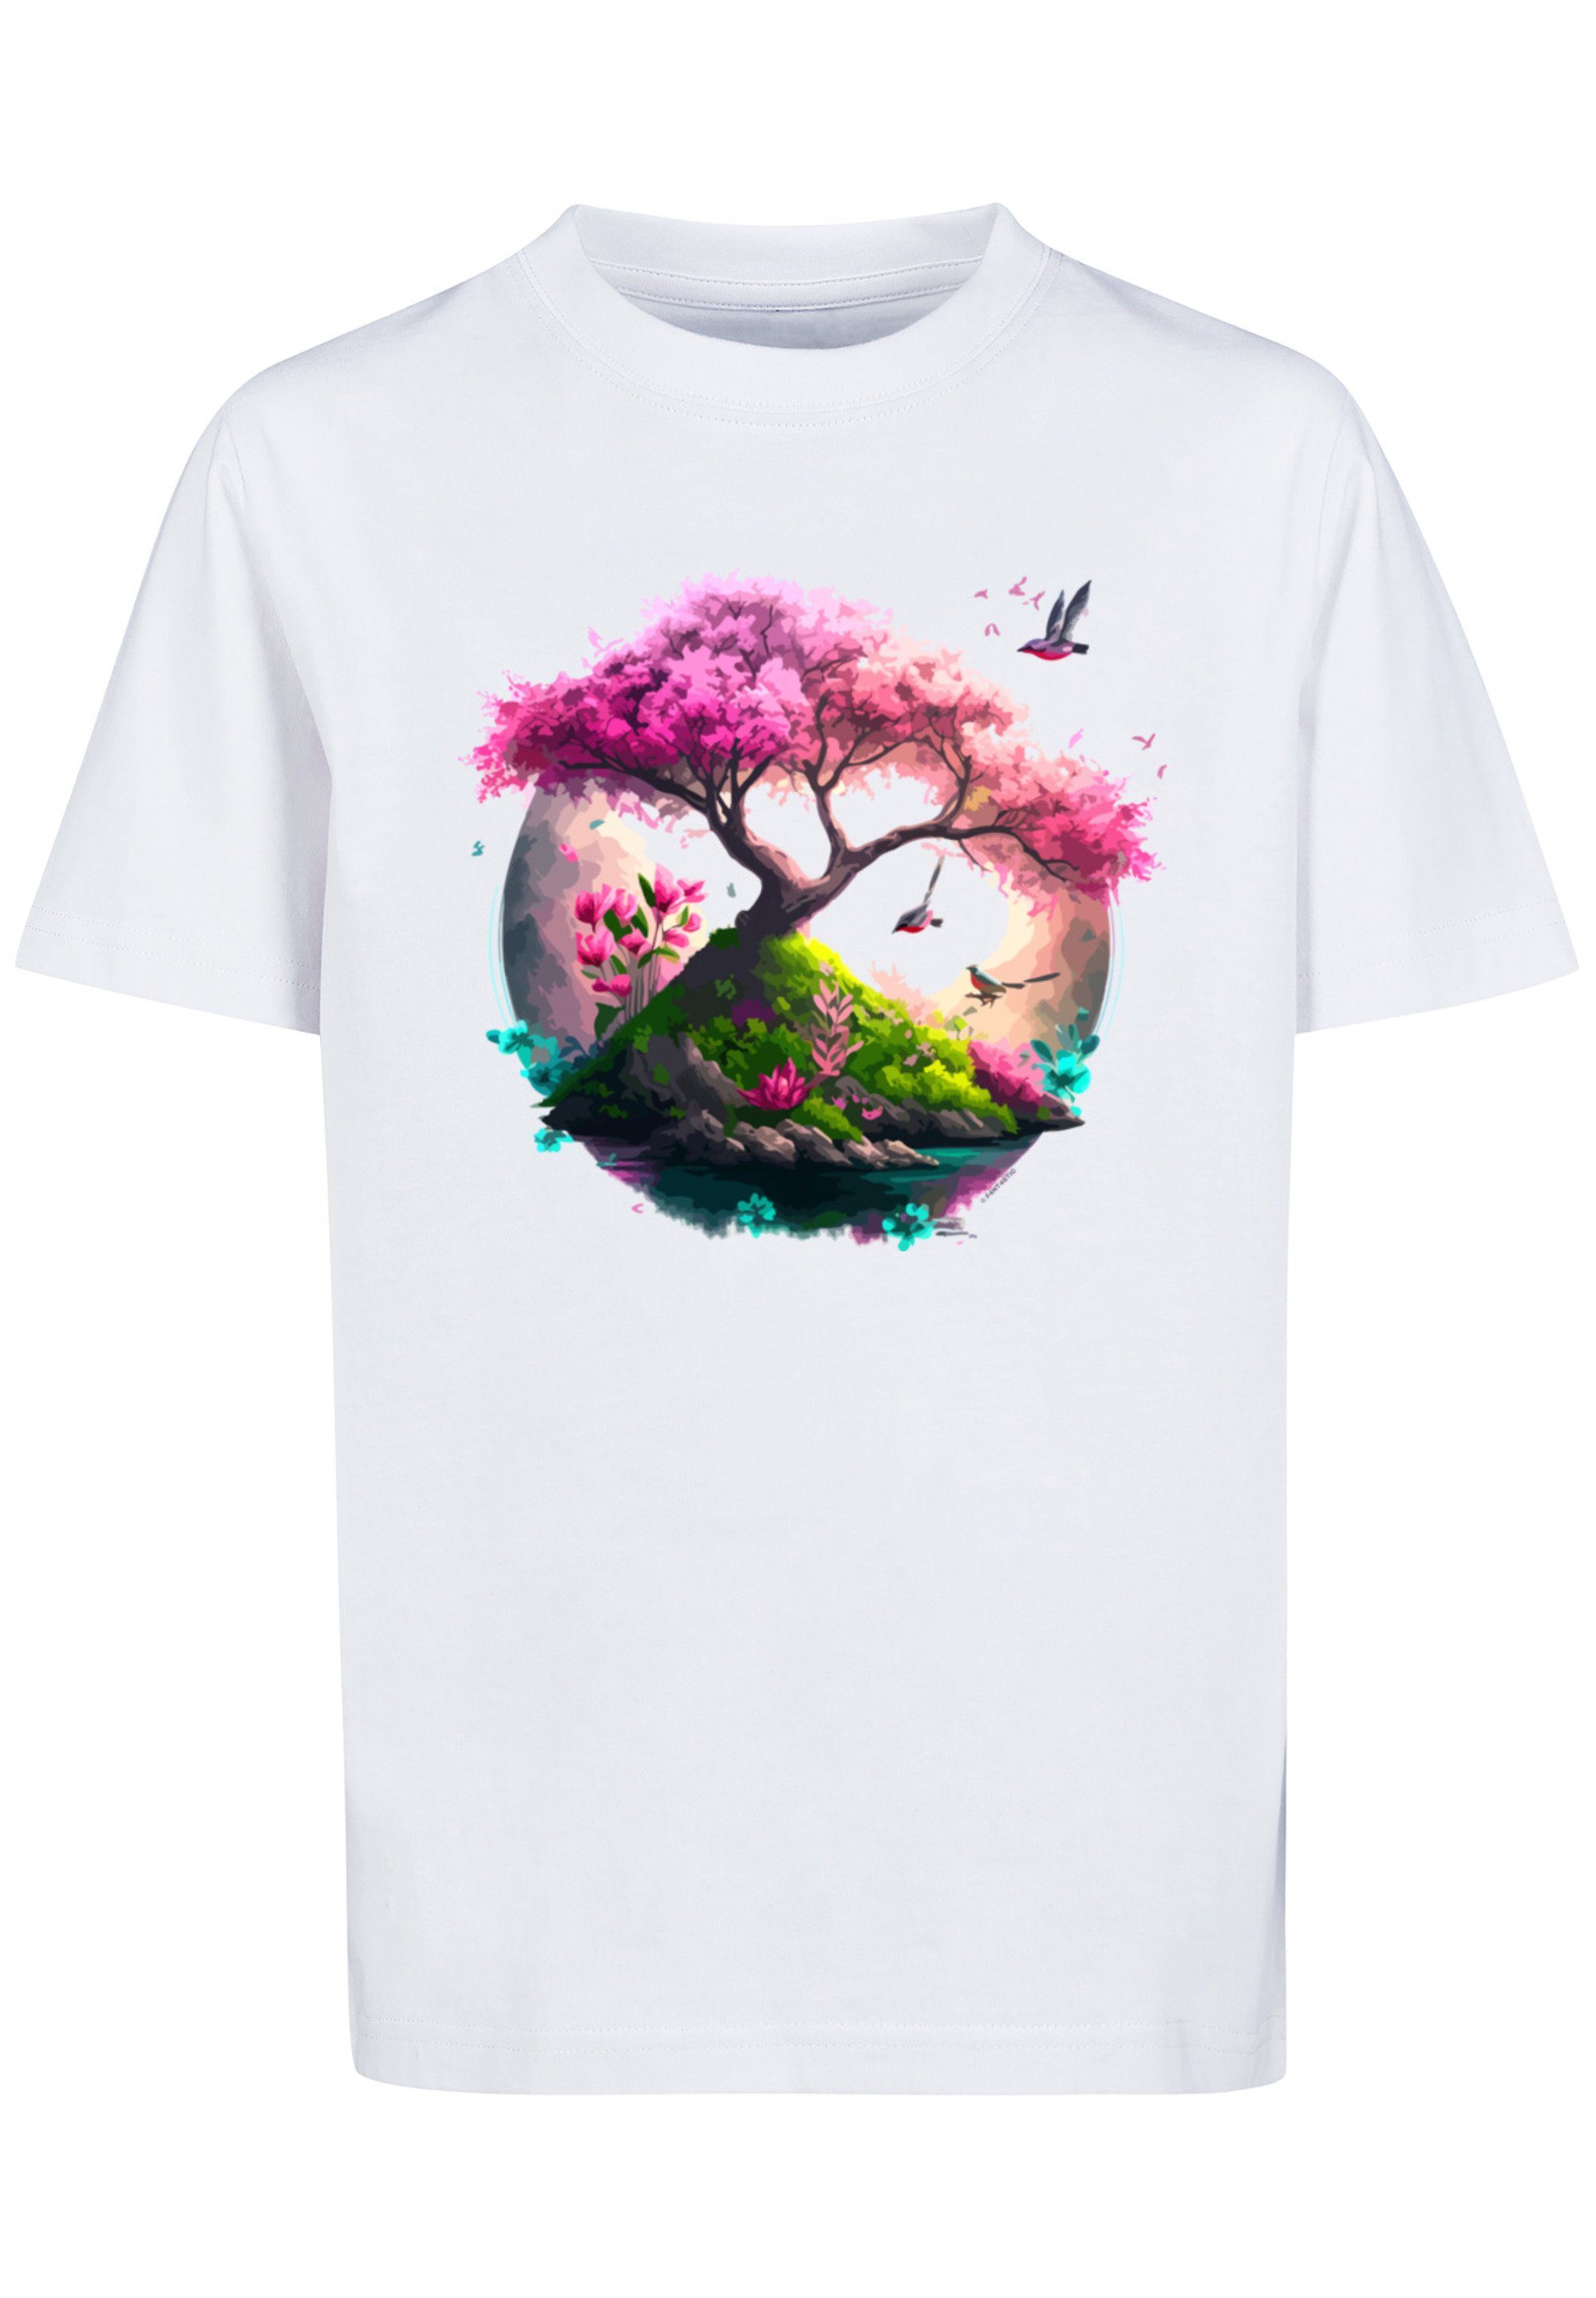 F4NT4STIC T-Shirt Kirschblüten Baum Print Tee Unisex weiß